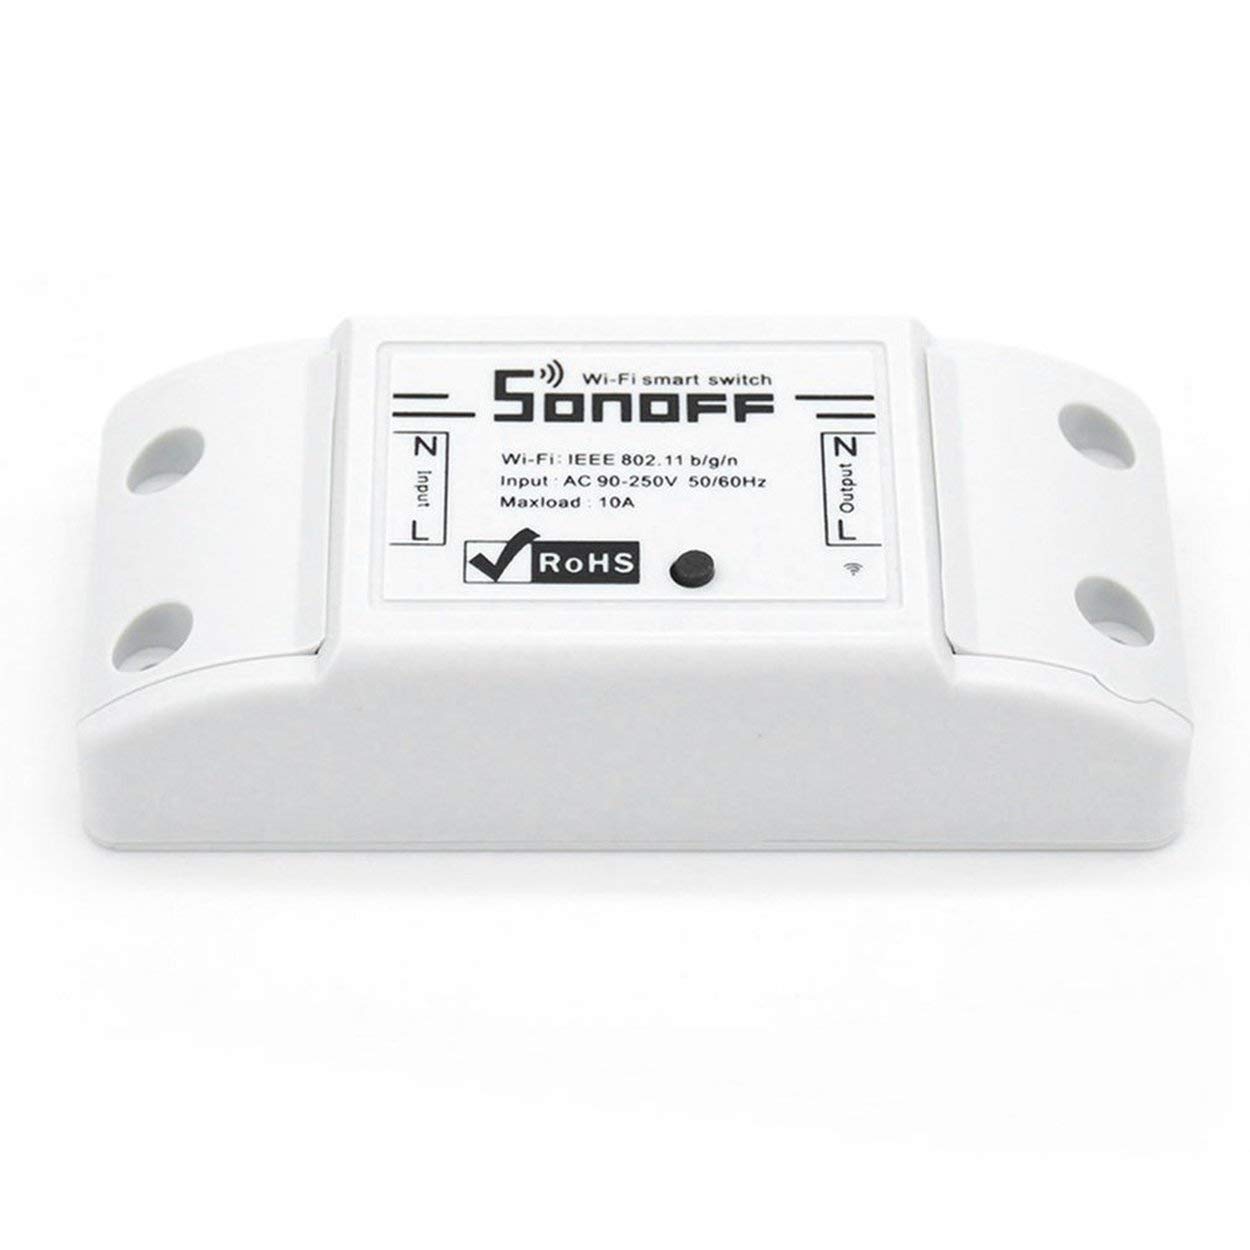 Lorenlli Sonoff WiFi Interruptor Inteligente Inalámbrico Universal Smart Home Módulo de Automatización con Control Remoto ABS Shell Socket para DIY Inicio